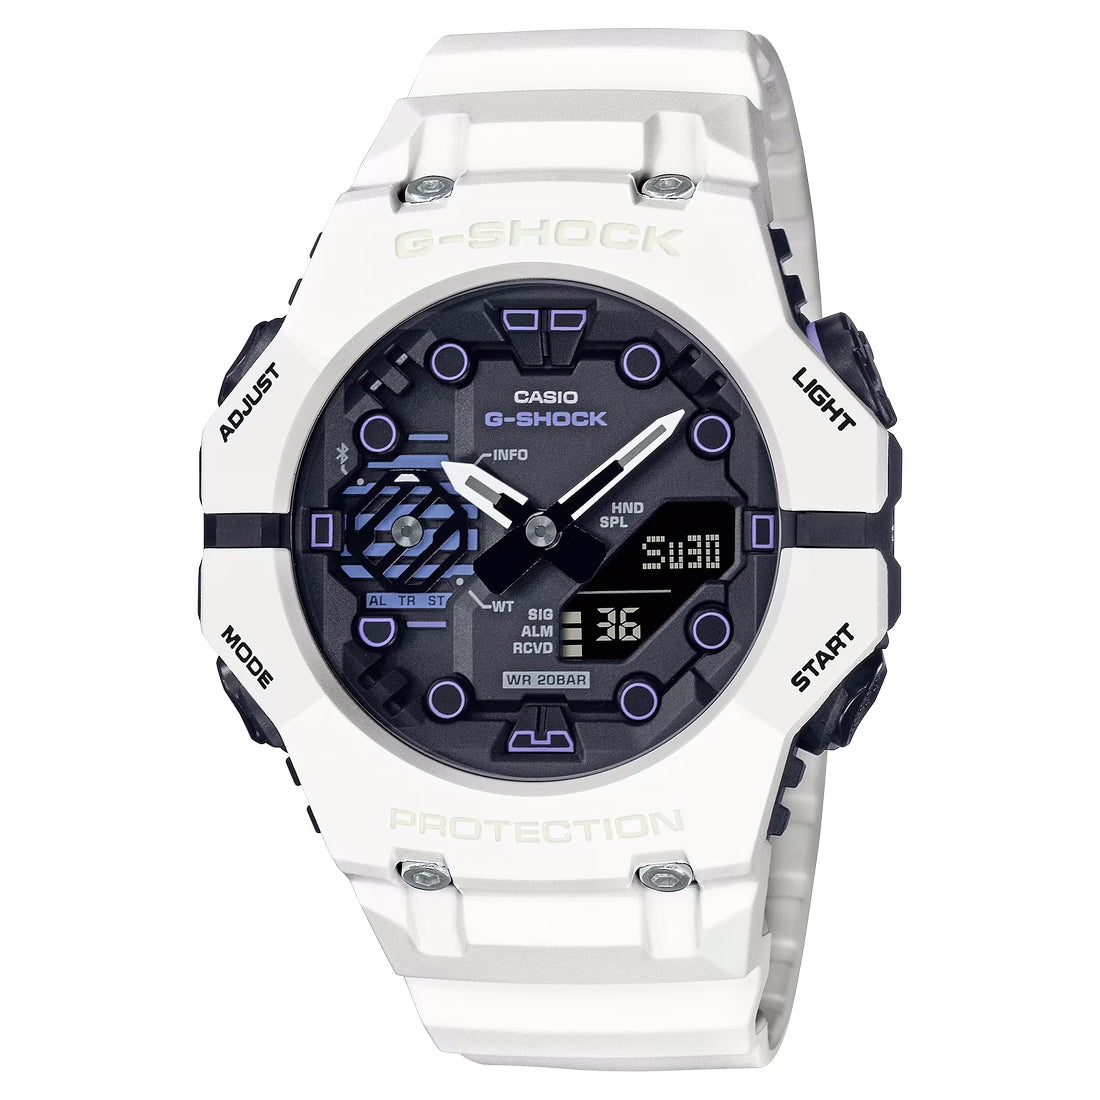 Orologio G-Shock GA-B001SF-7AER bianco bluetooth